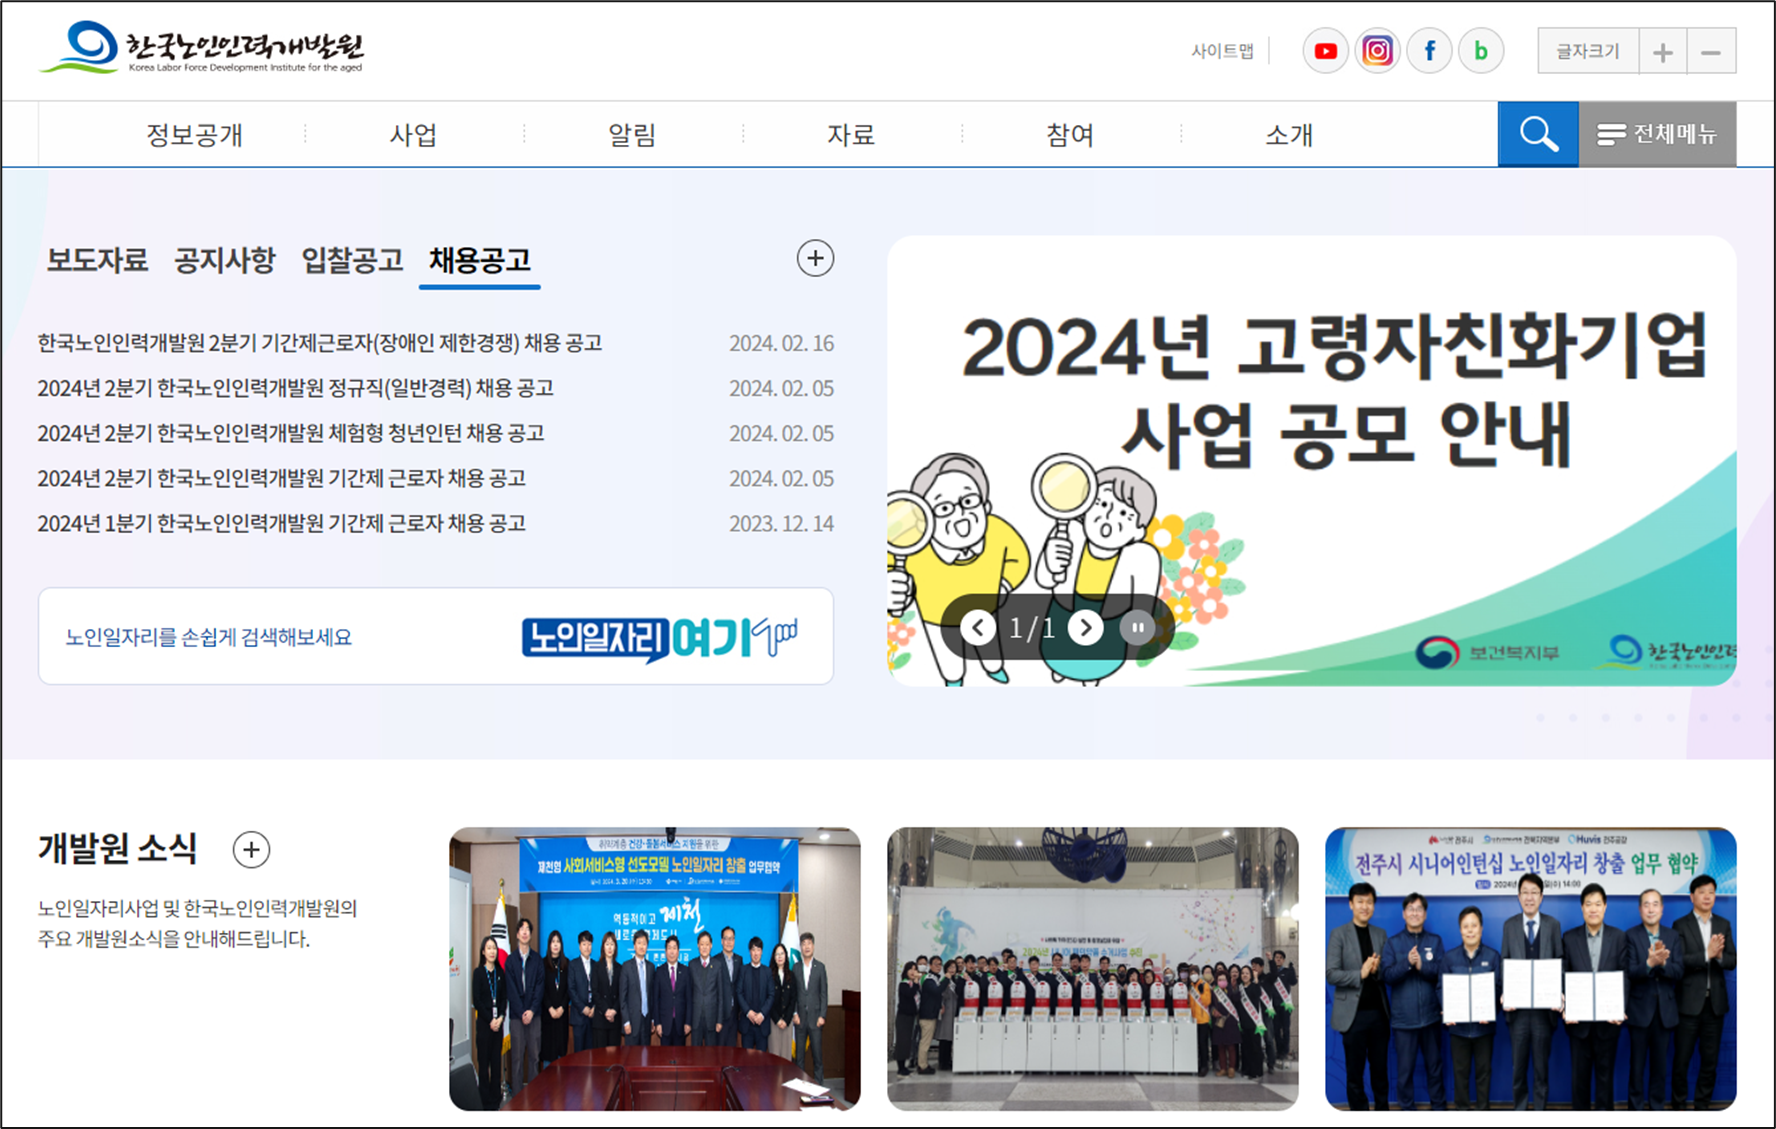 한국노인인력개발원 홈페이지